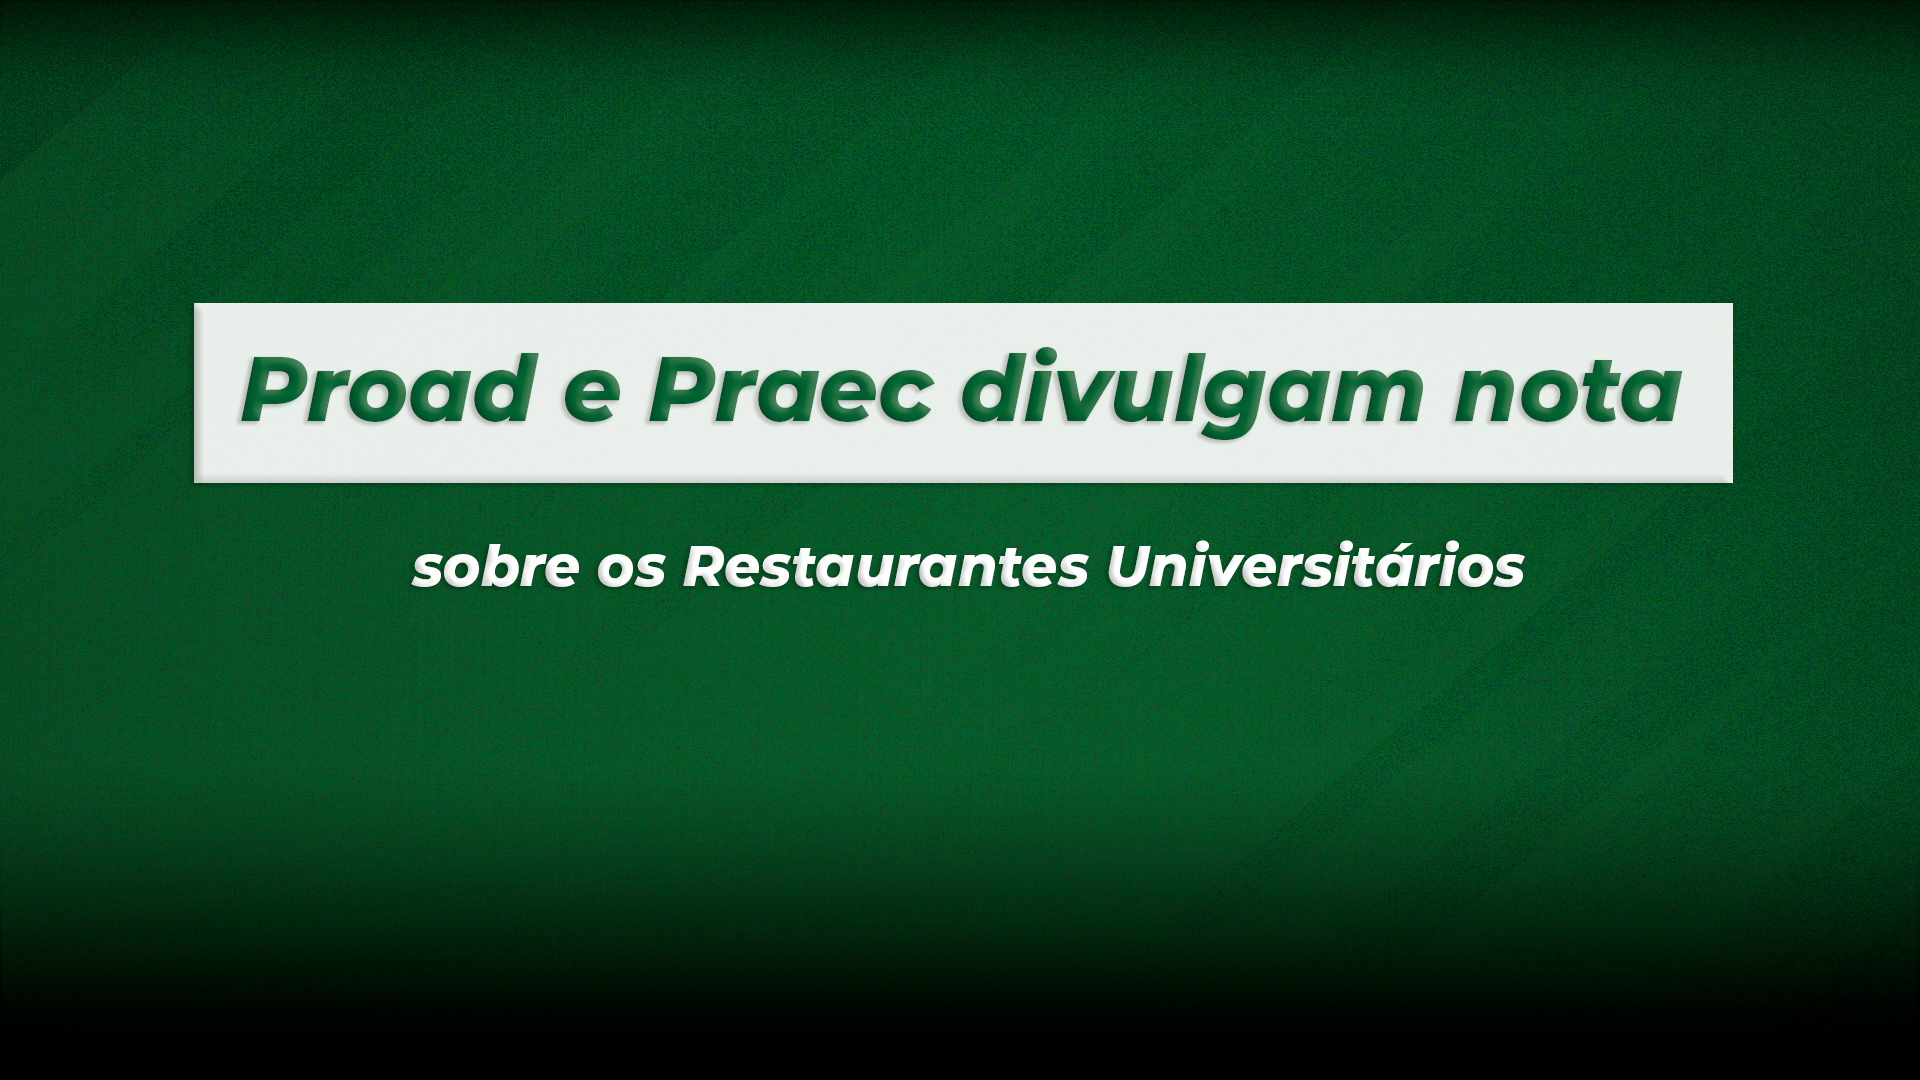 Proad e Praec divulgam nota sobre os Restaurantes Universitários